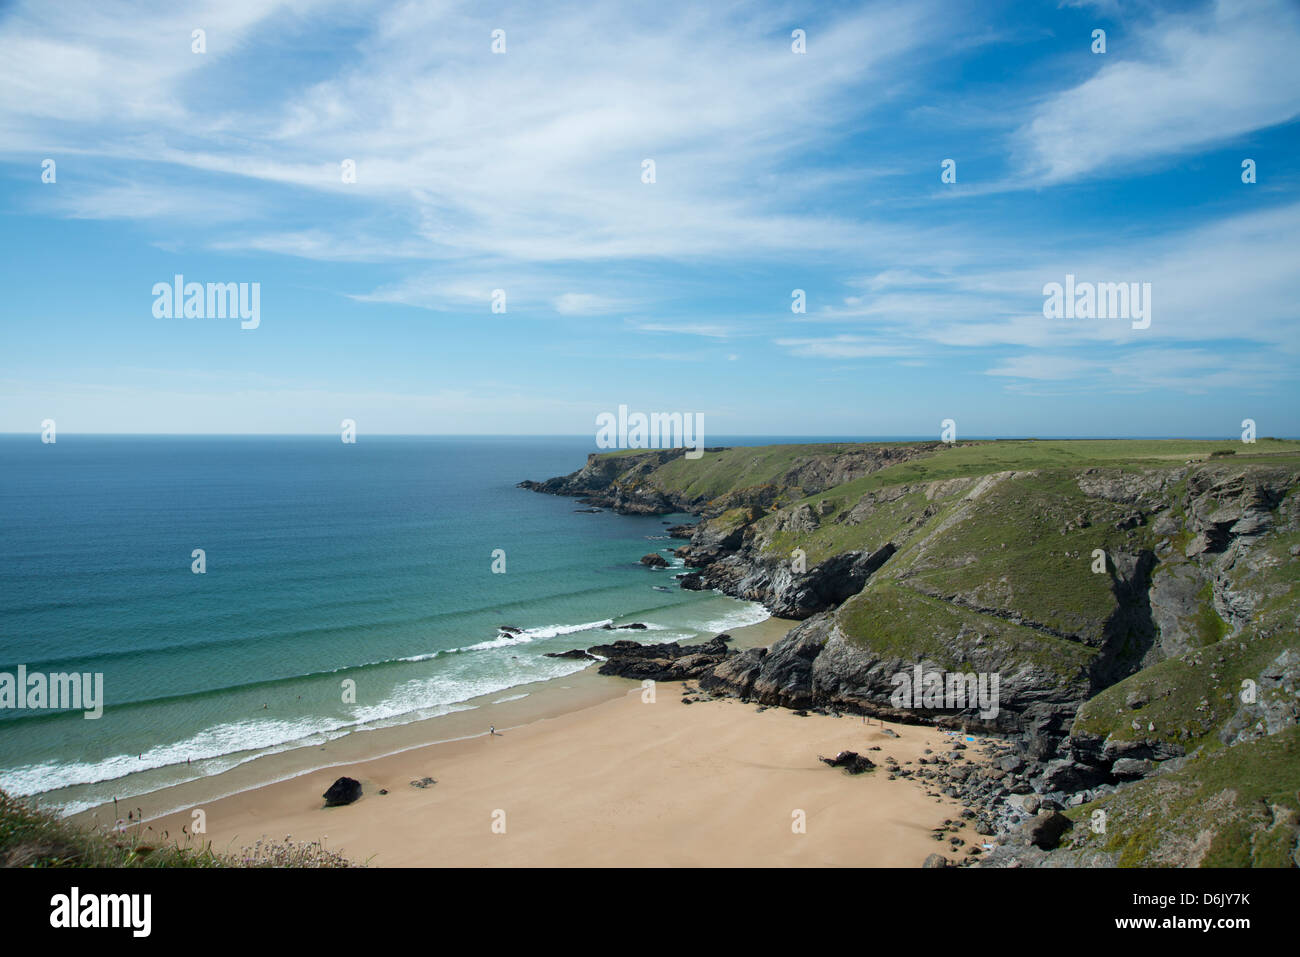 Porthcothan plage et sur les falaises, Cornwall, Angleterre, Royaume-Uni, Europe Banque D'Images